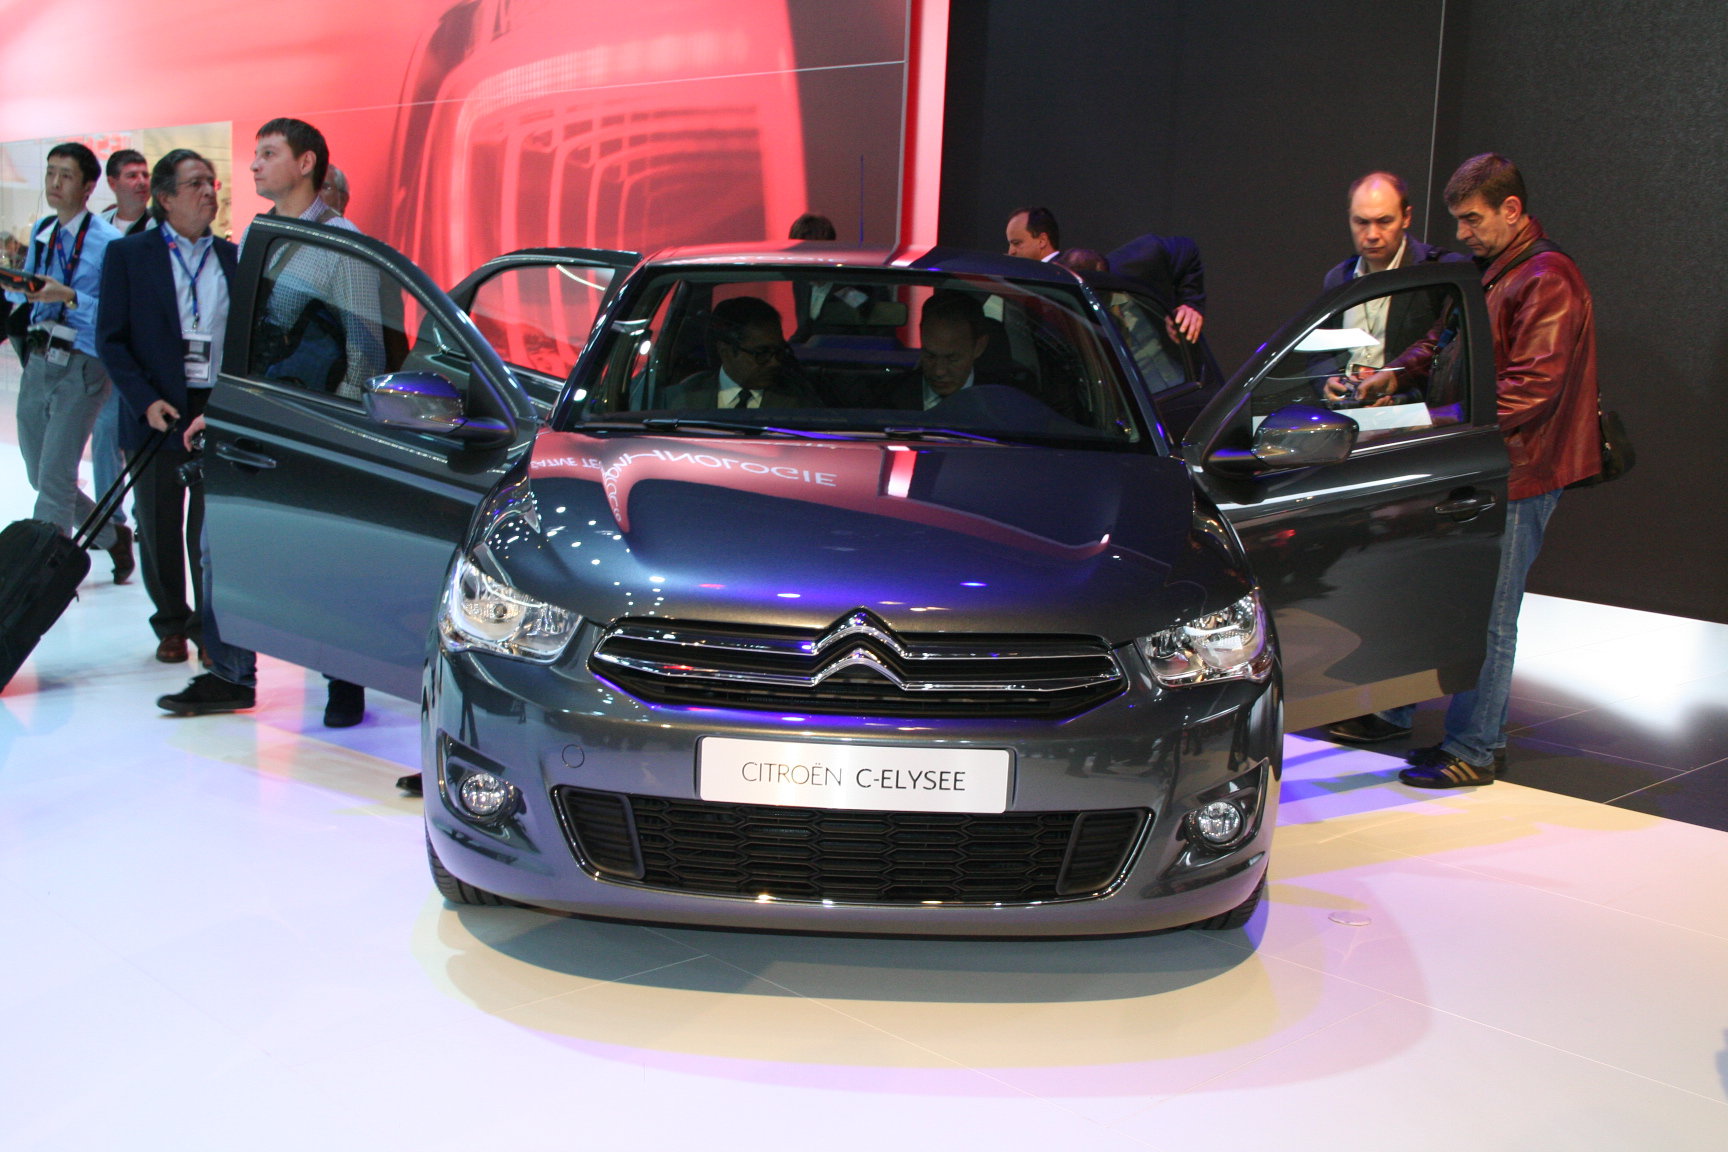 Автомобіль має багато спільного з Peugeot 408 (простіше назвати їх відмінності) і має непоганий список опціонального оснащення: Citroen C4 L оснащується системою запуску двигуна з кнопки, hands-free, GPS-навігацією з сенсорним екраном, камерою заднього виду, що підігрівається лобовим склом і іонізатором повітря